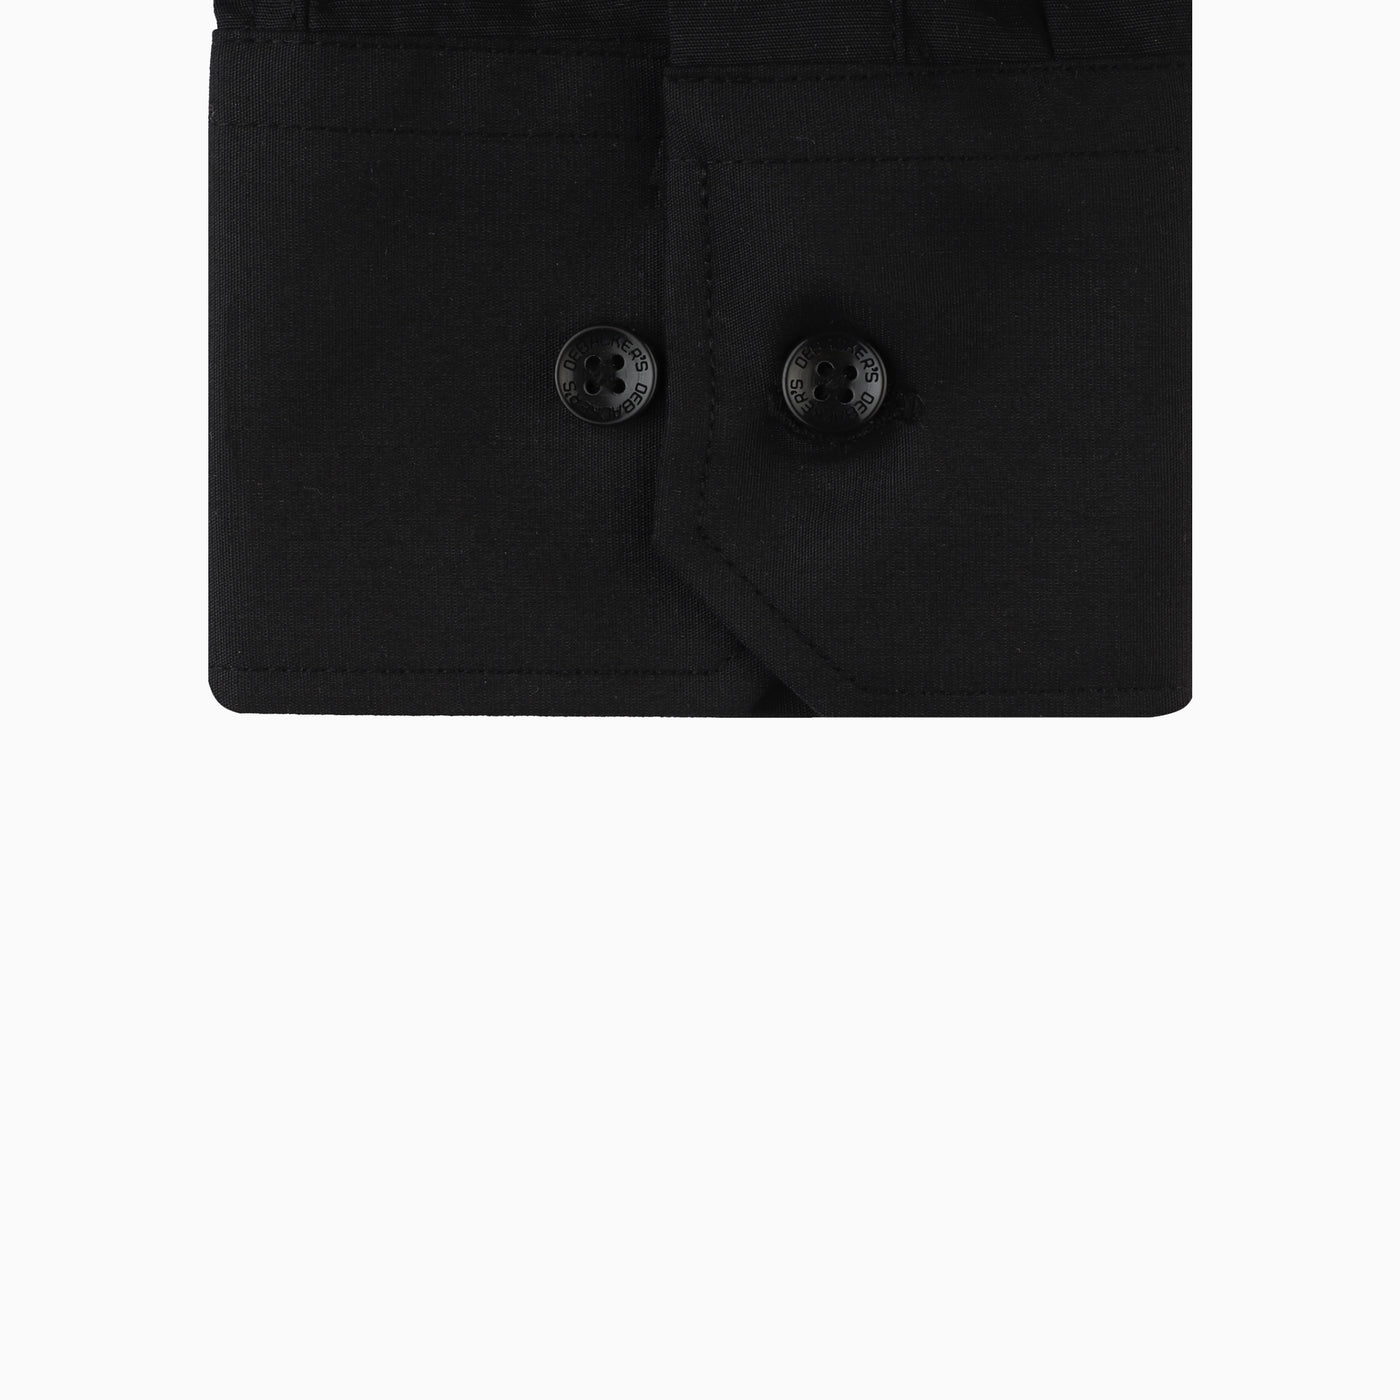 CLASSIC Black shirt